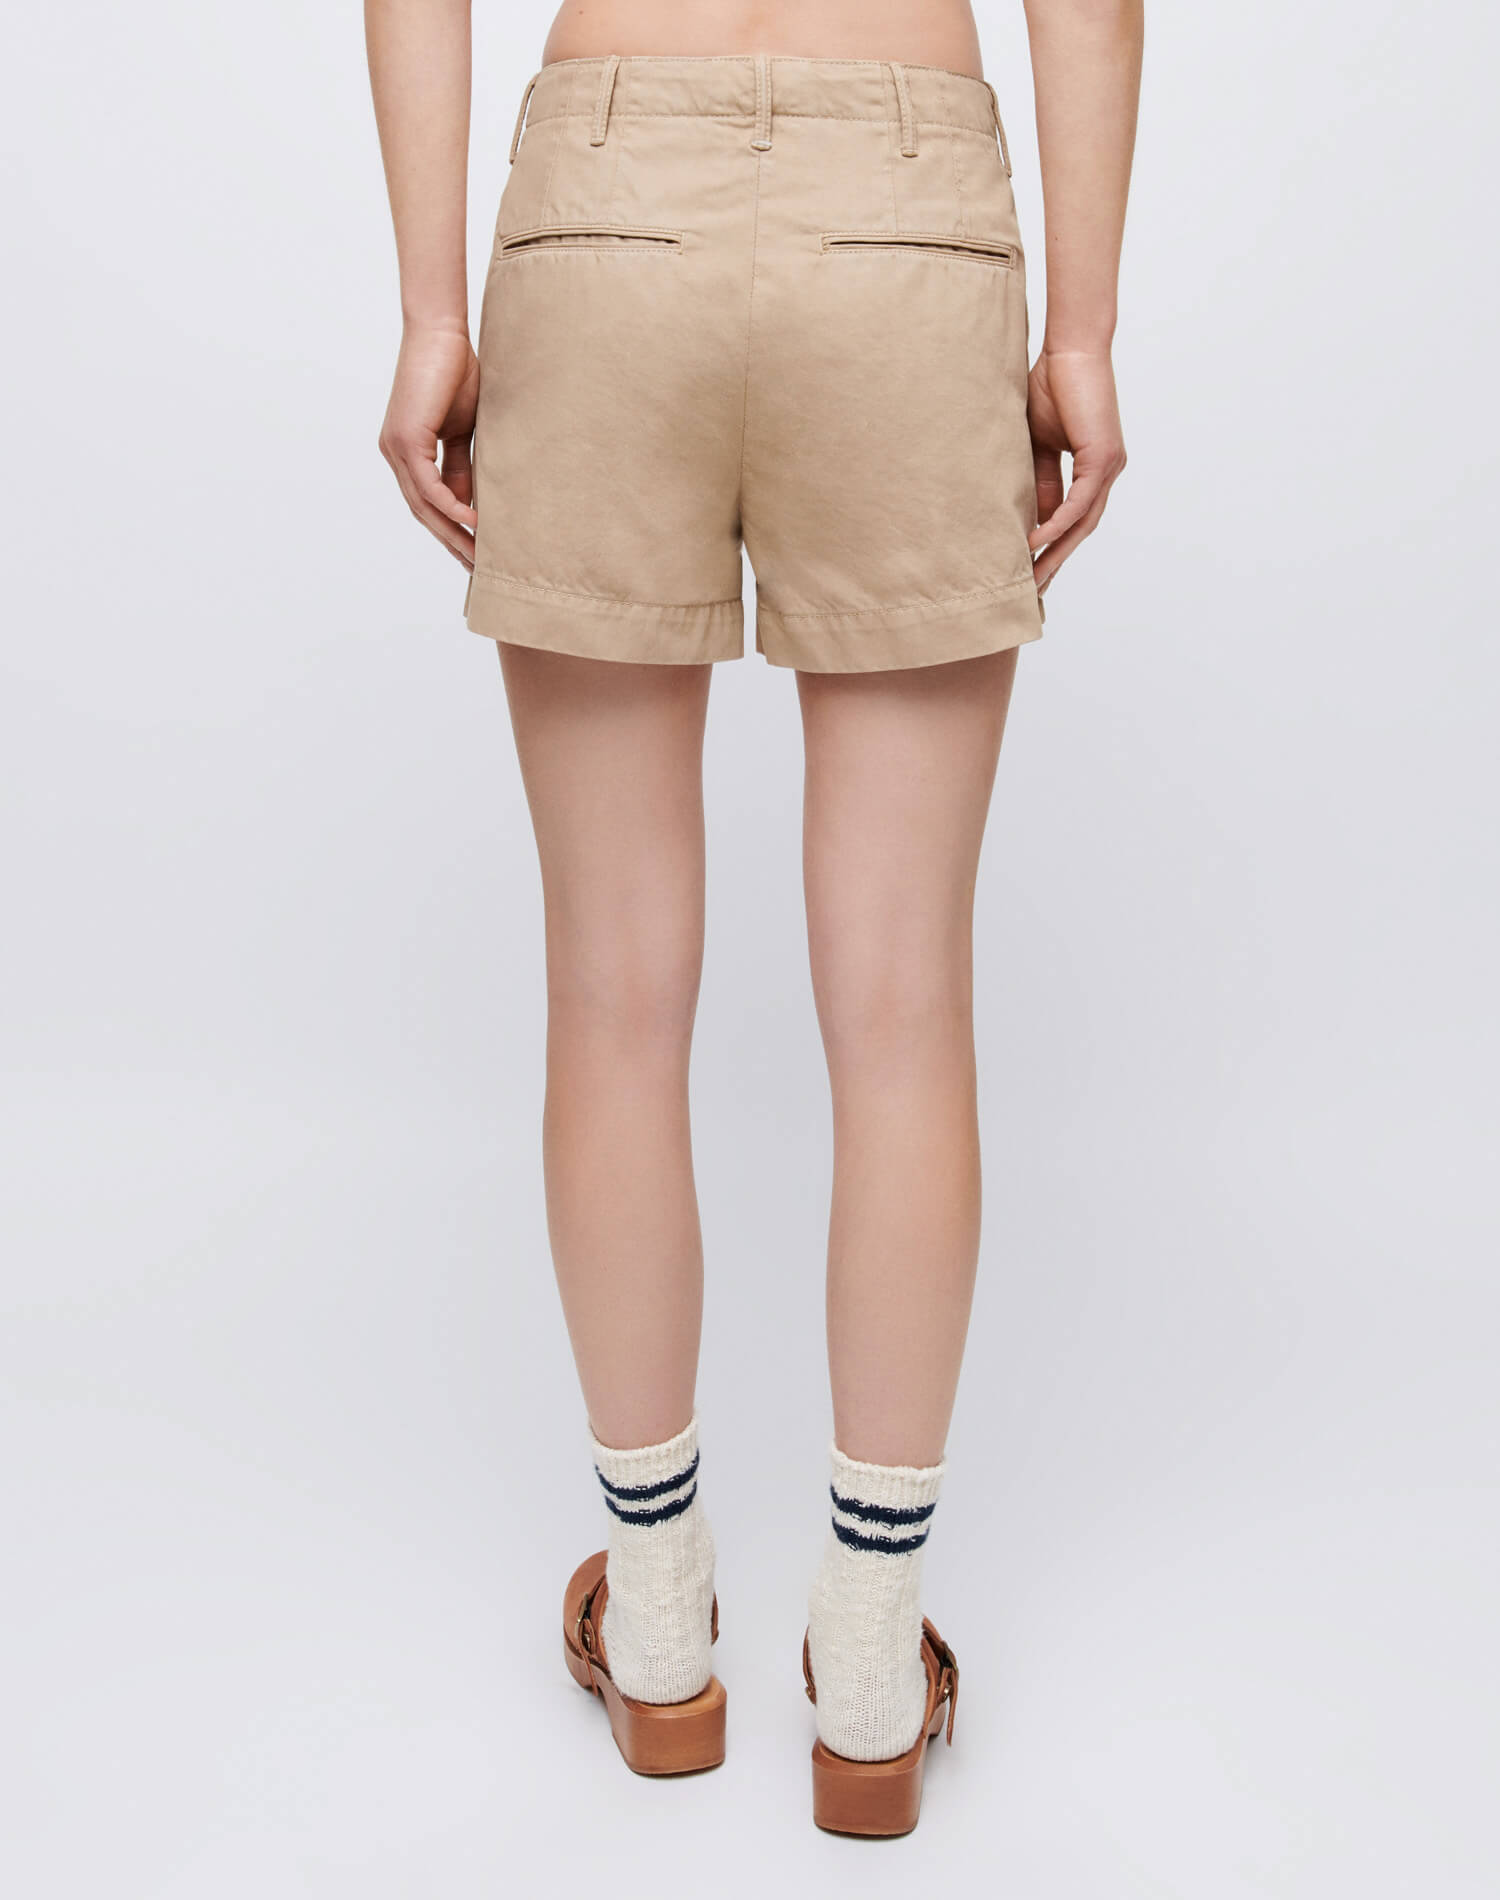 90s Trouser Shorts - Washed Khaki